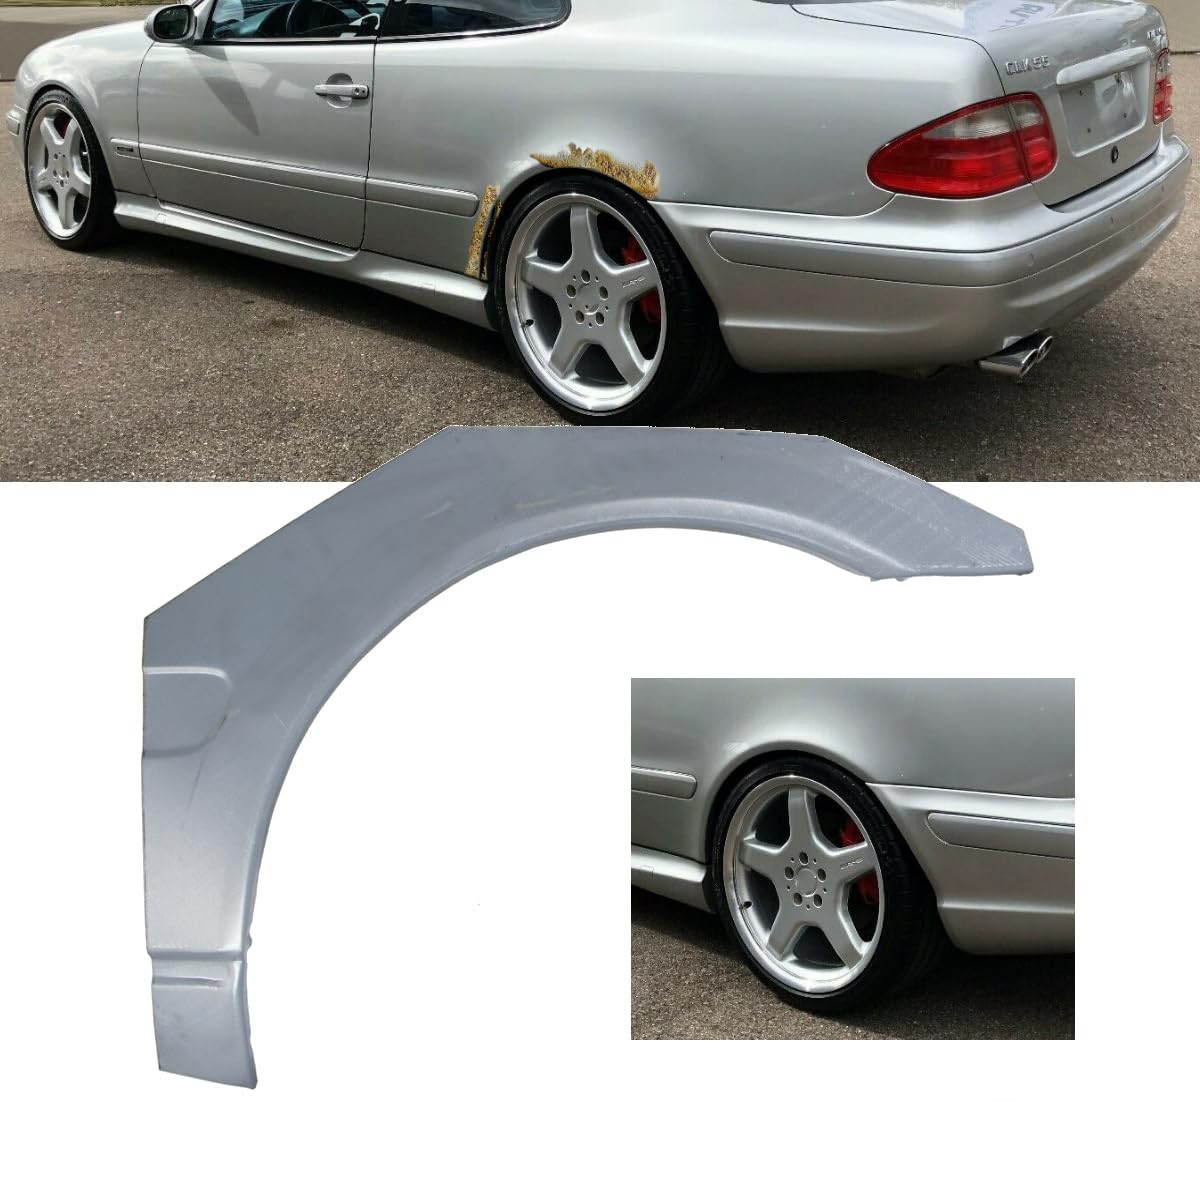 Radlauf Reparaturblech hinten Links verzinkt kompatibel für Mercedes CLK W208 97-03 DM Autoteile 61031 von DM Autoteile